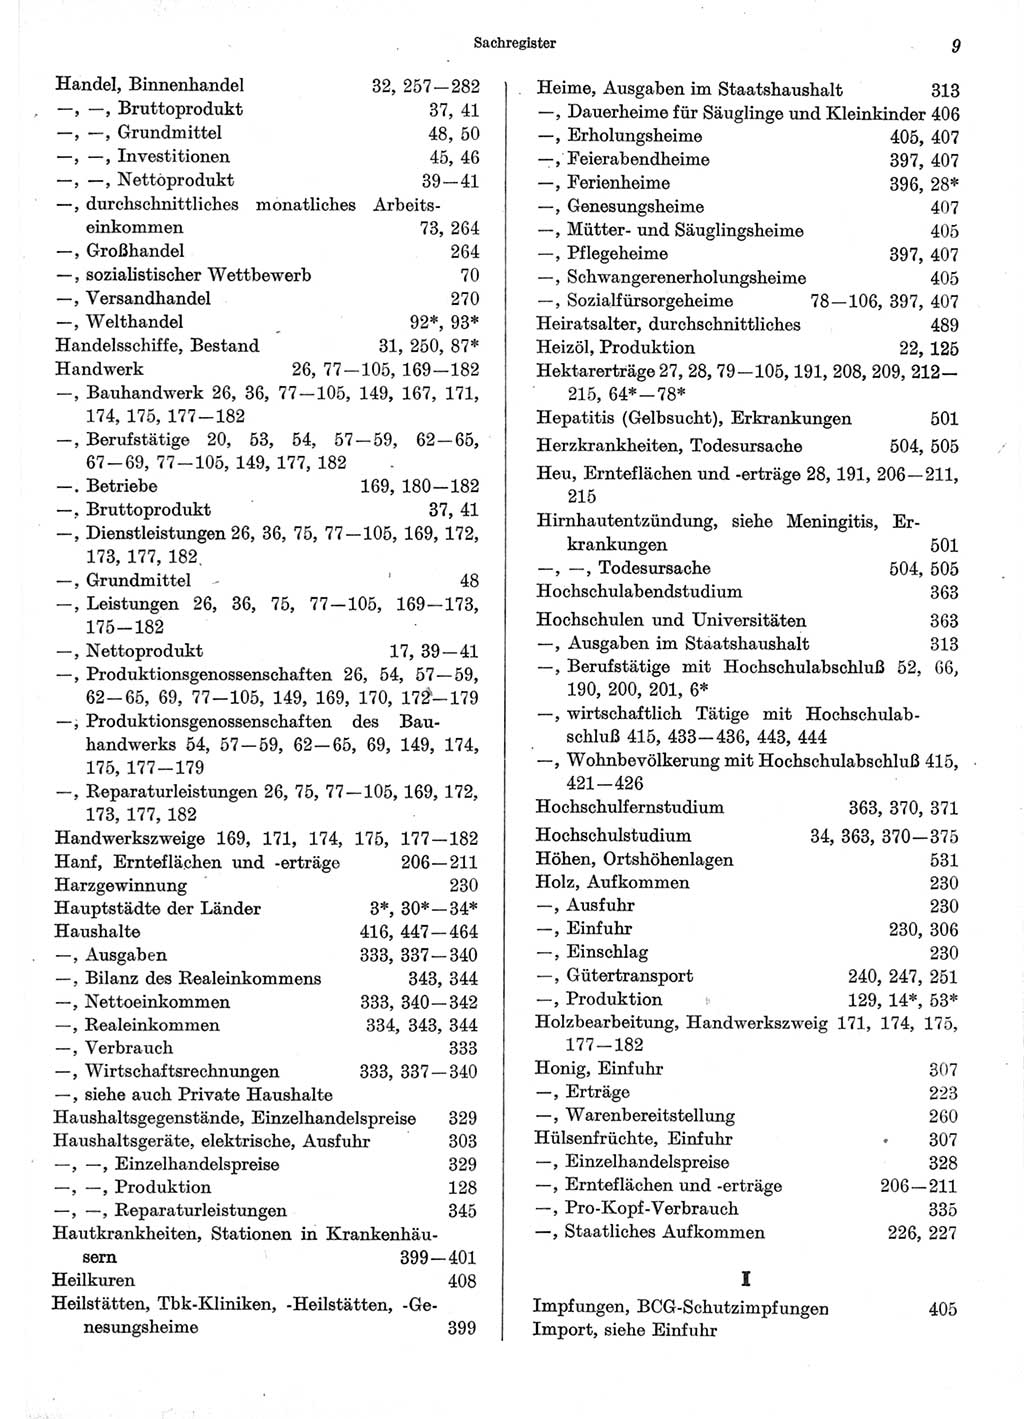 Statistisches Jahrbuch der Deutschen Demokratischen Republik (DDR) 1973, Seite 9 (Stat. Jb. DDR 1973, S. 9)